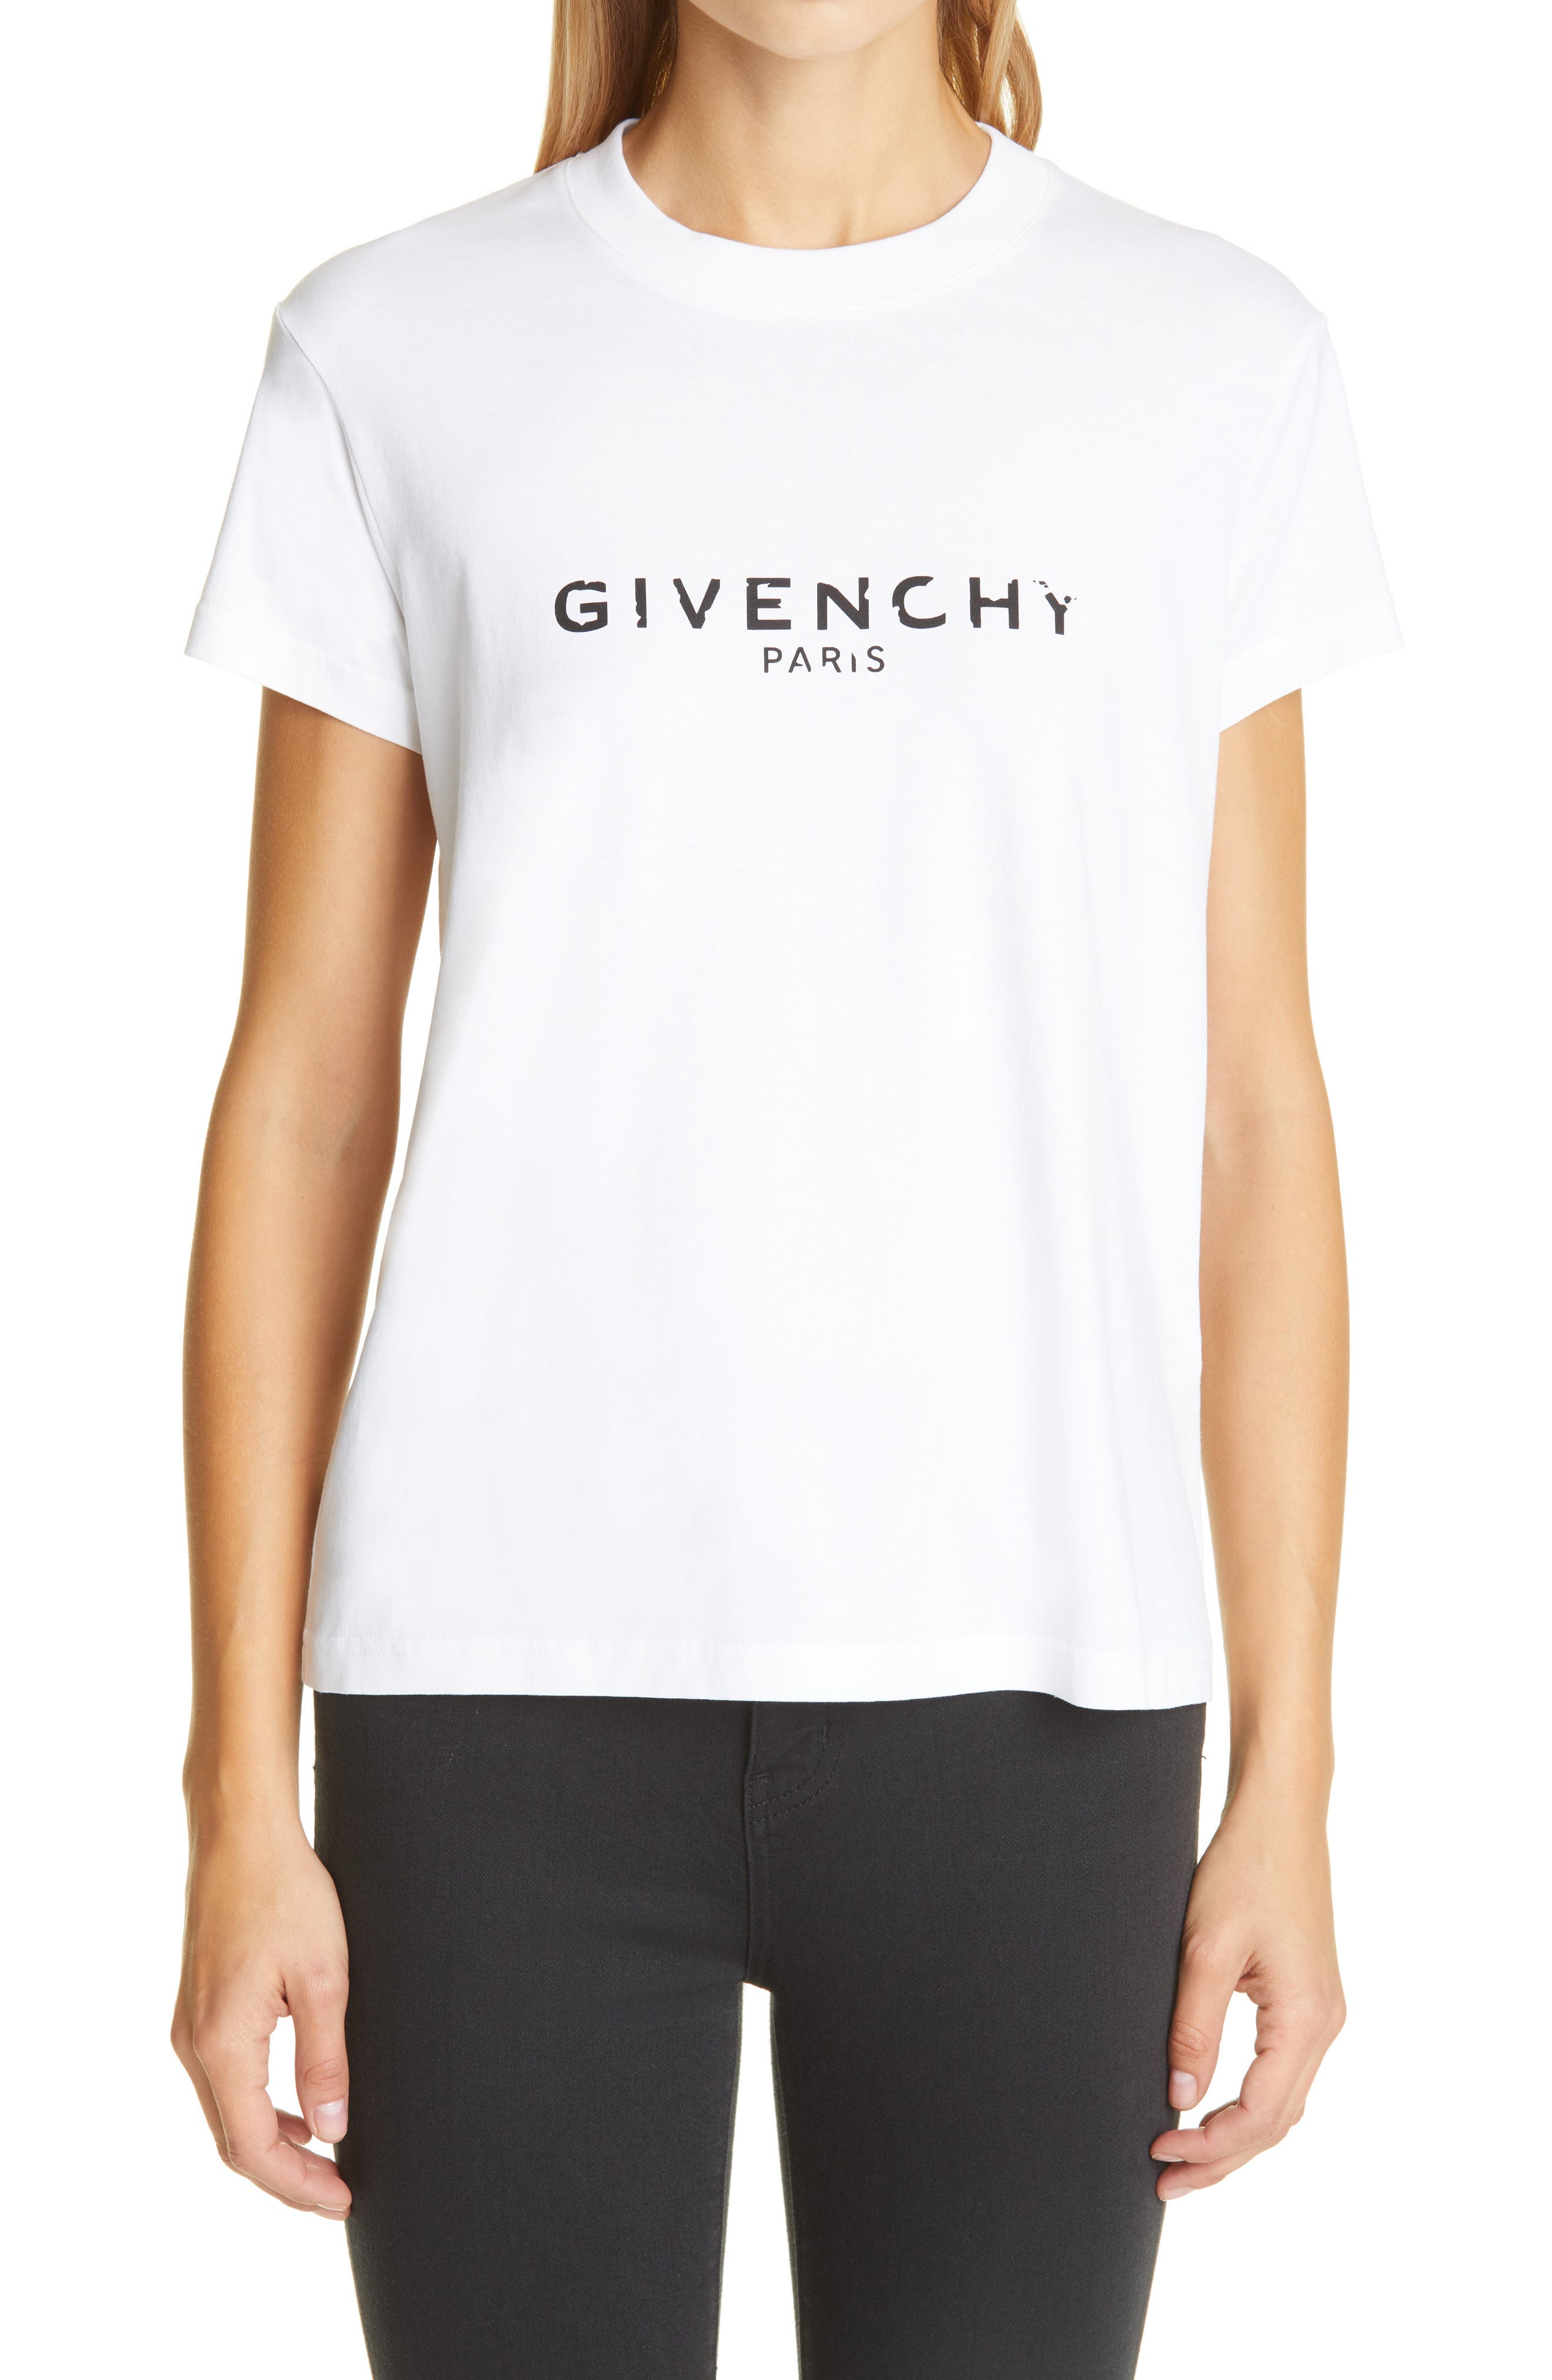 givenchy paris women's t shirt